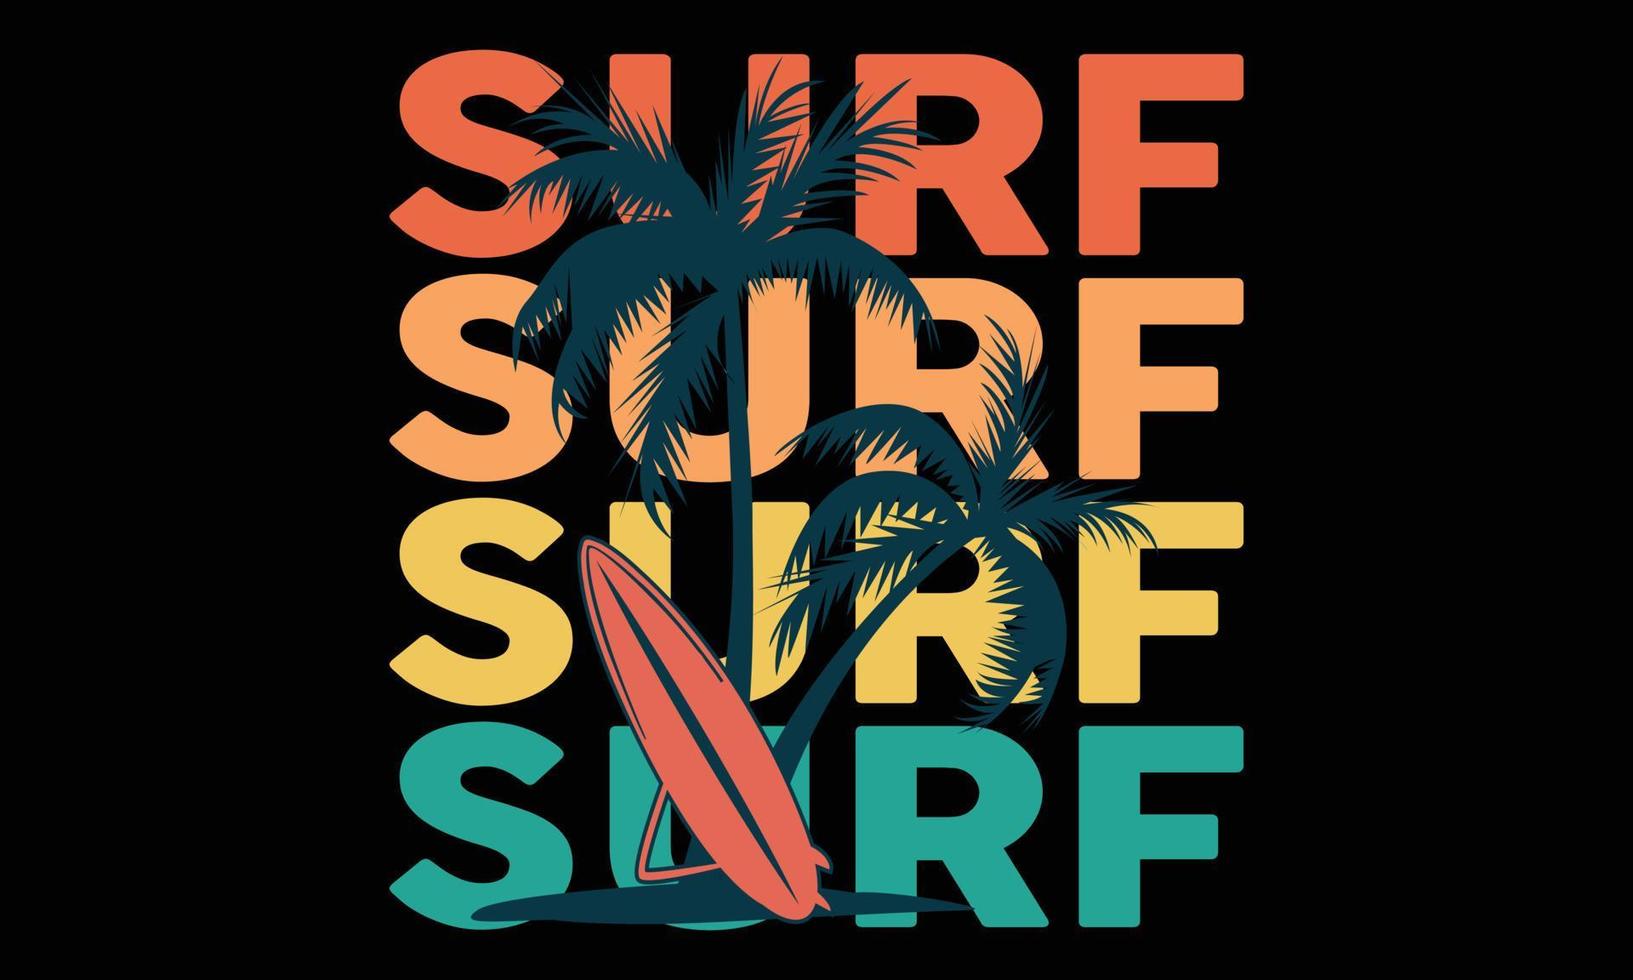 surfing paradijs typografie t-shirt ontwerp. motiverende surfing typografie t-shirt creatief kinderen, en surfing thema vector illustratie.